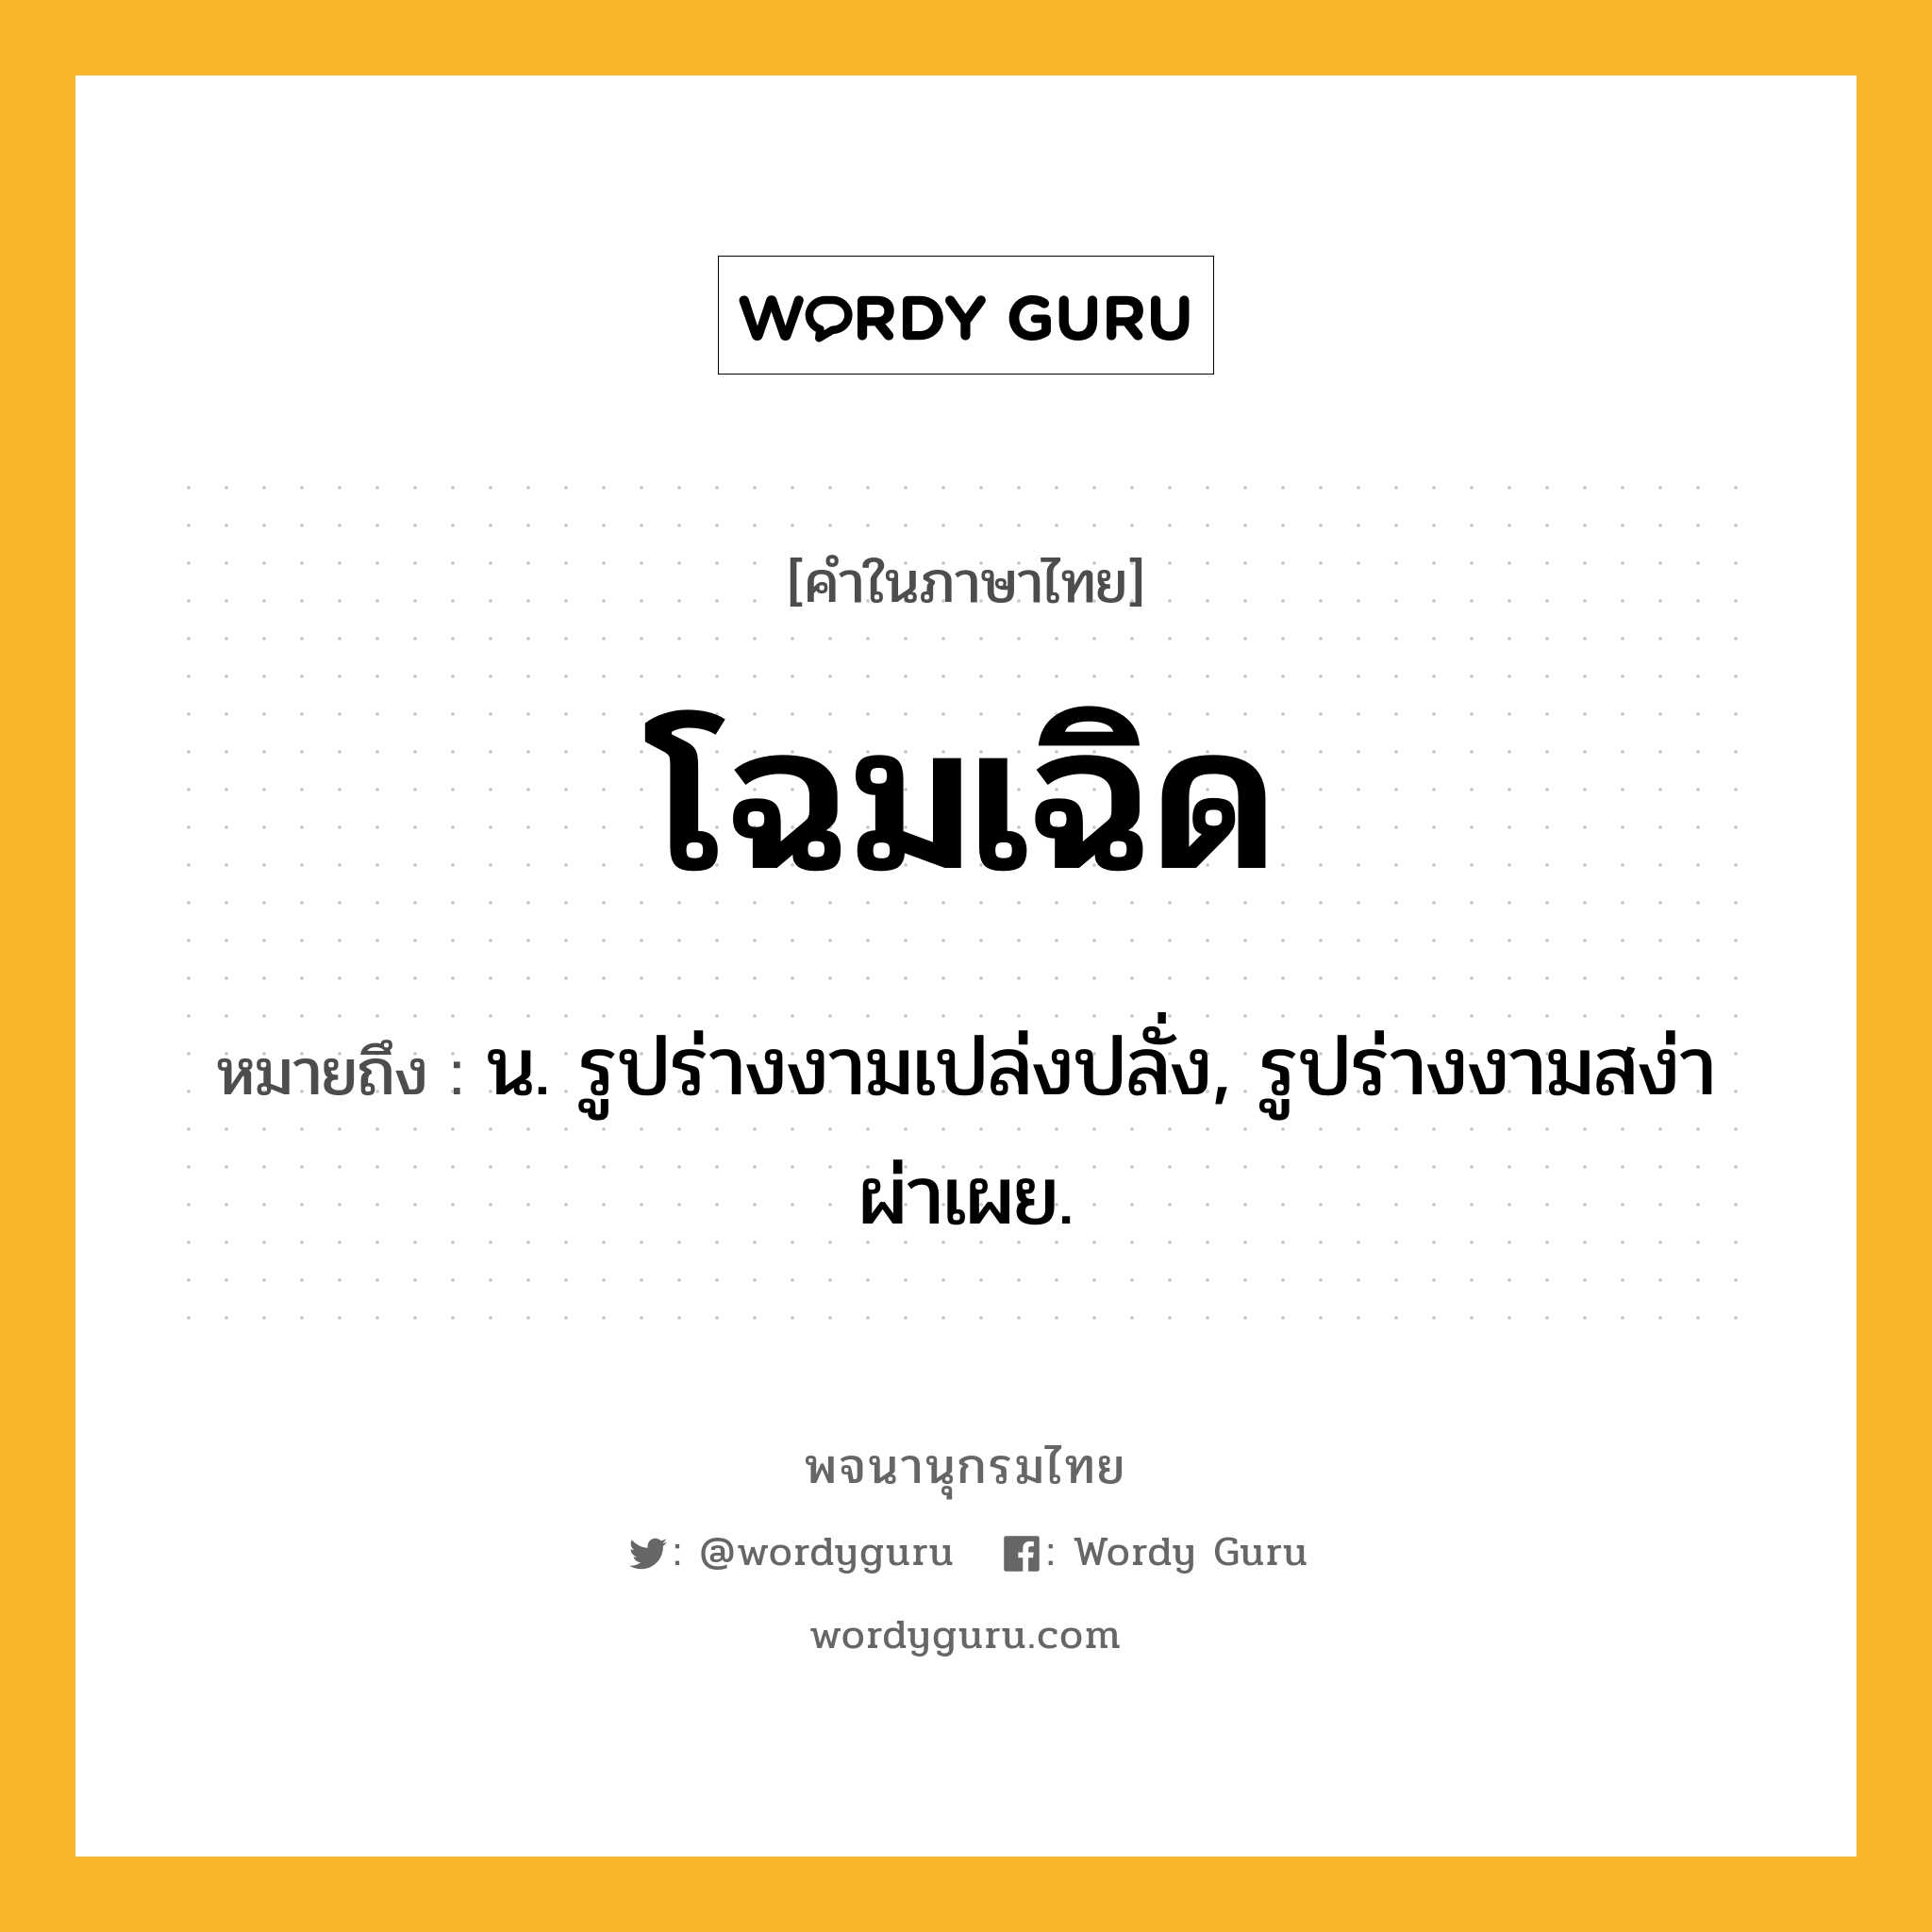 โฉมเฉิด หมายถึงอะไร?, คำในภาษาไทย โฉมเฉิด หมายถึง น. รูปร่างงามเปล่งปลั่ง, รูปร่างงามสง่าผ่าเผย.